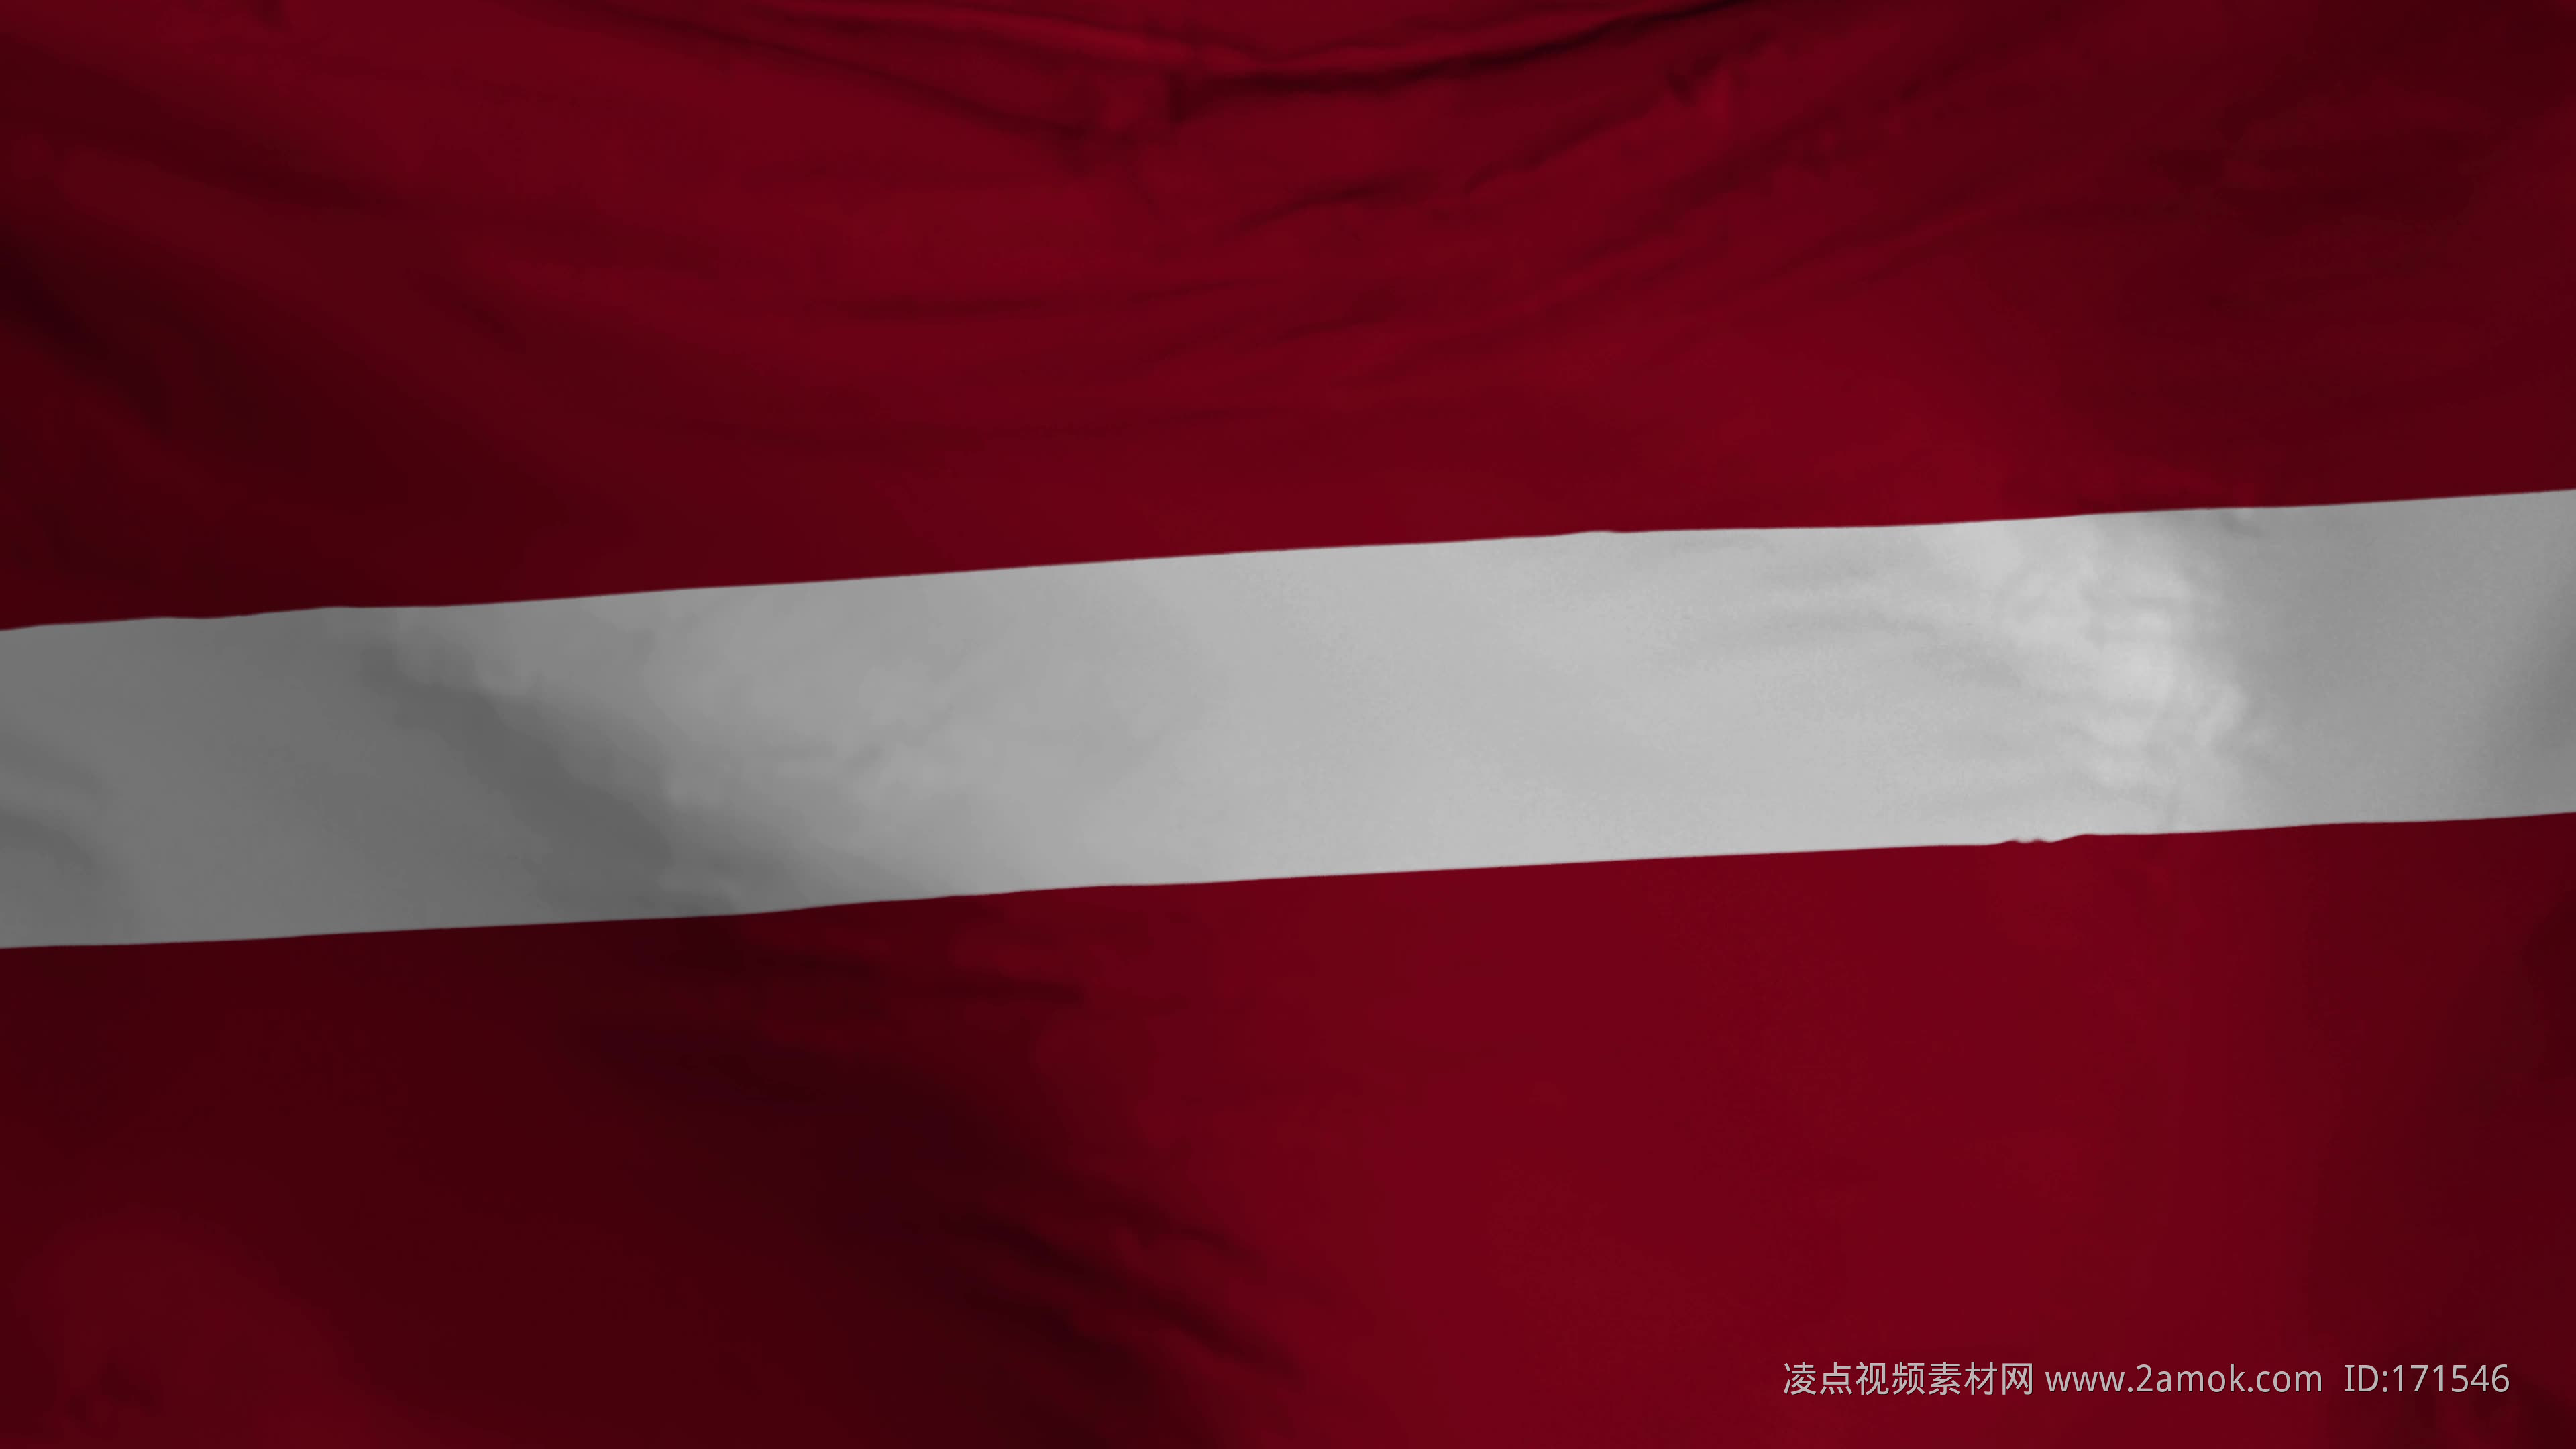 拉脱维亚国旗 库存图片. 图片 包括有 数据条, 浮动, 挥动, 蓝蓝, 快速, 模糊的, 符号, 拉脱维亚 - 252276179